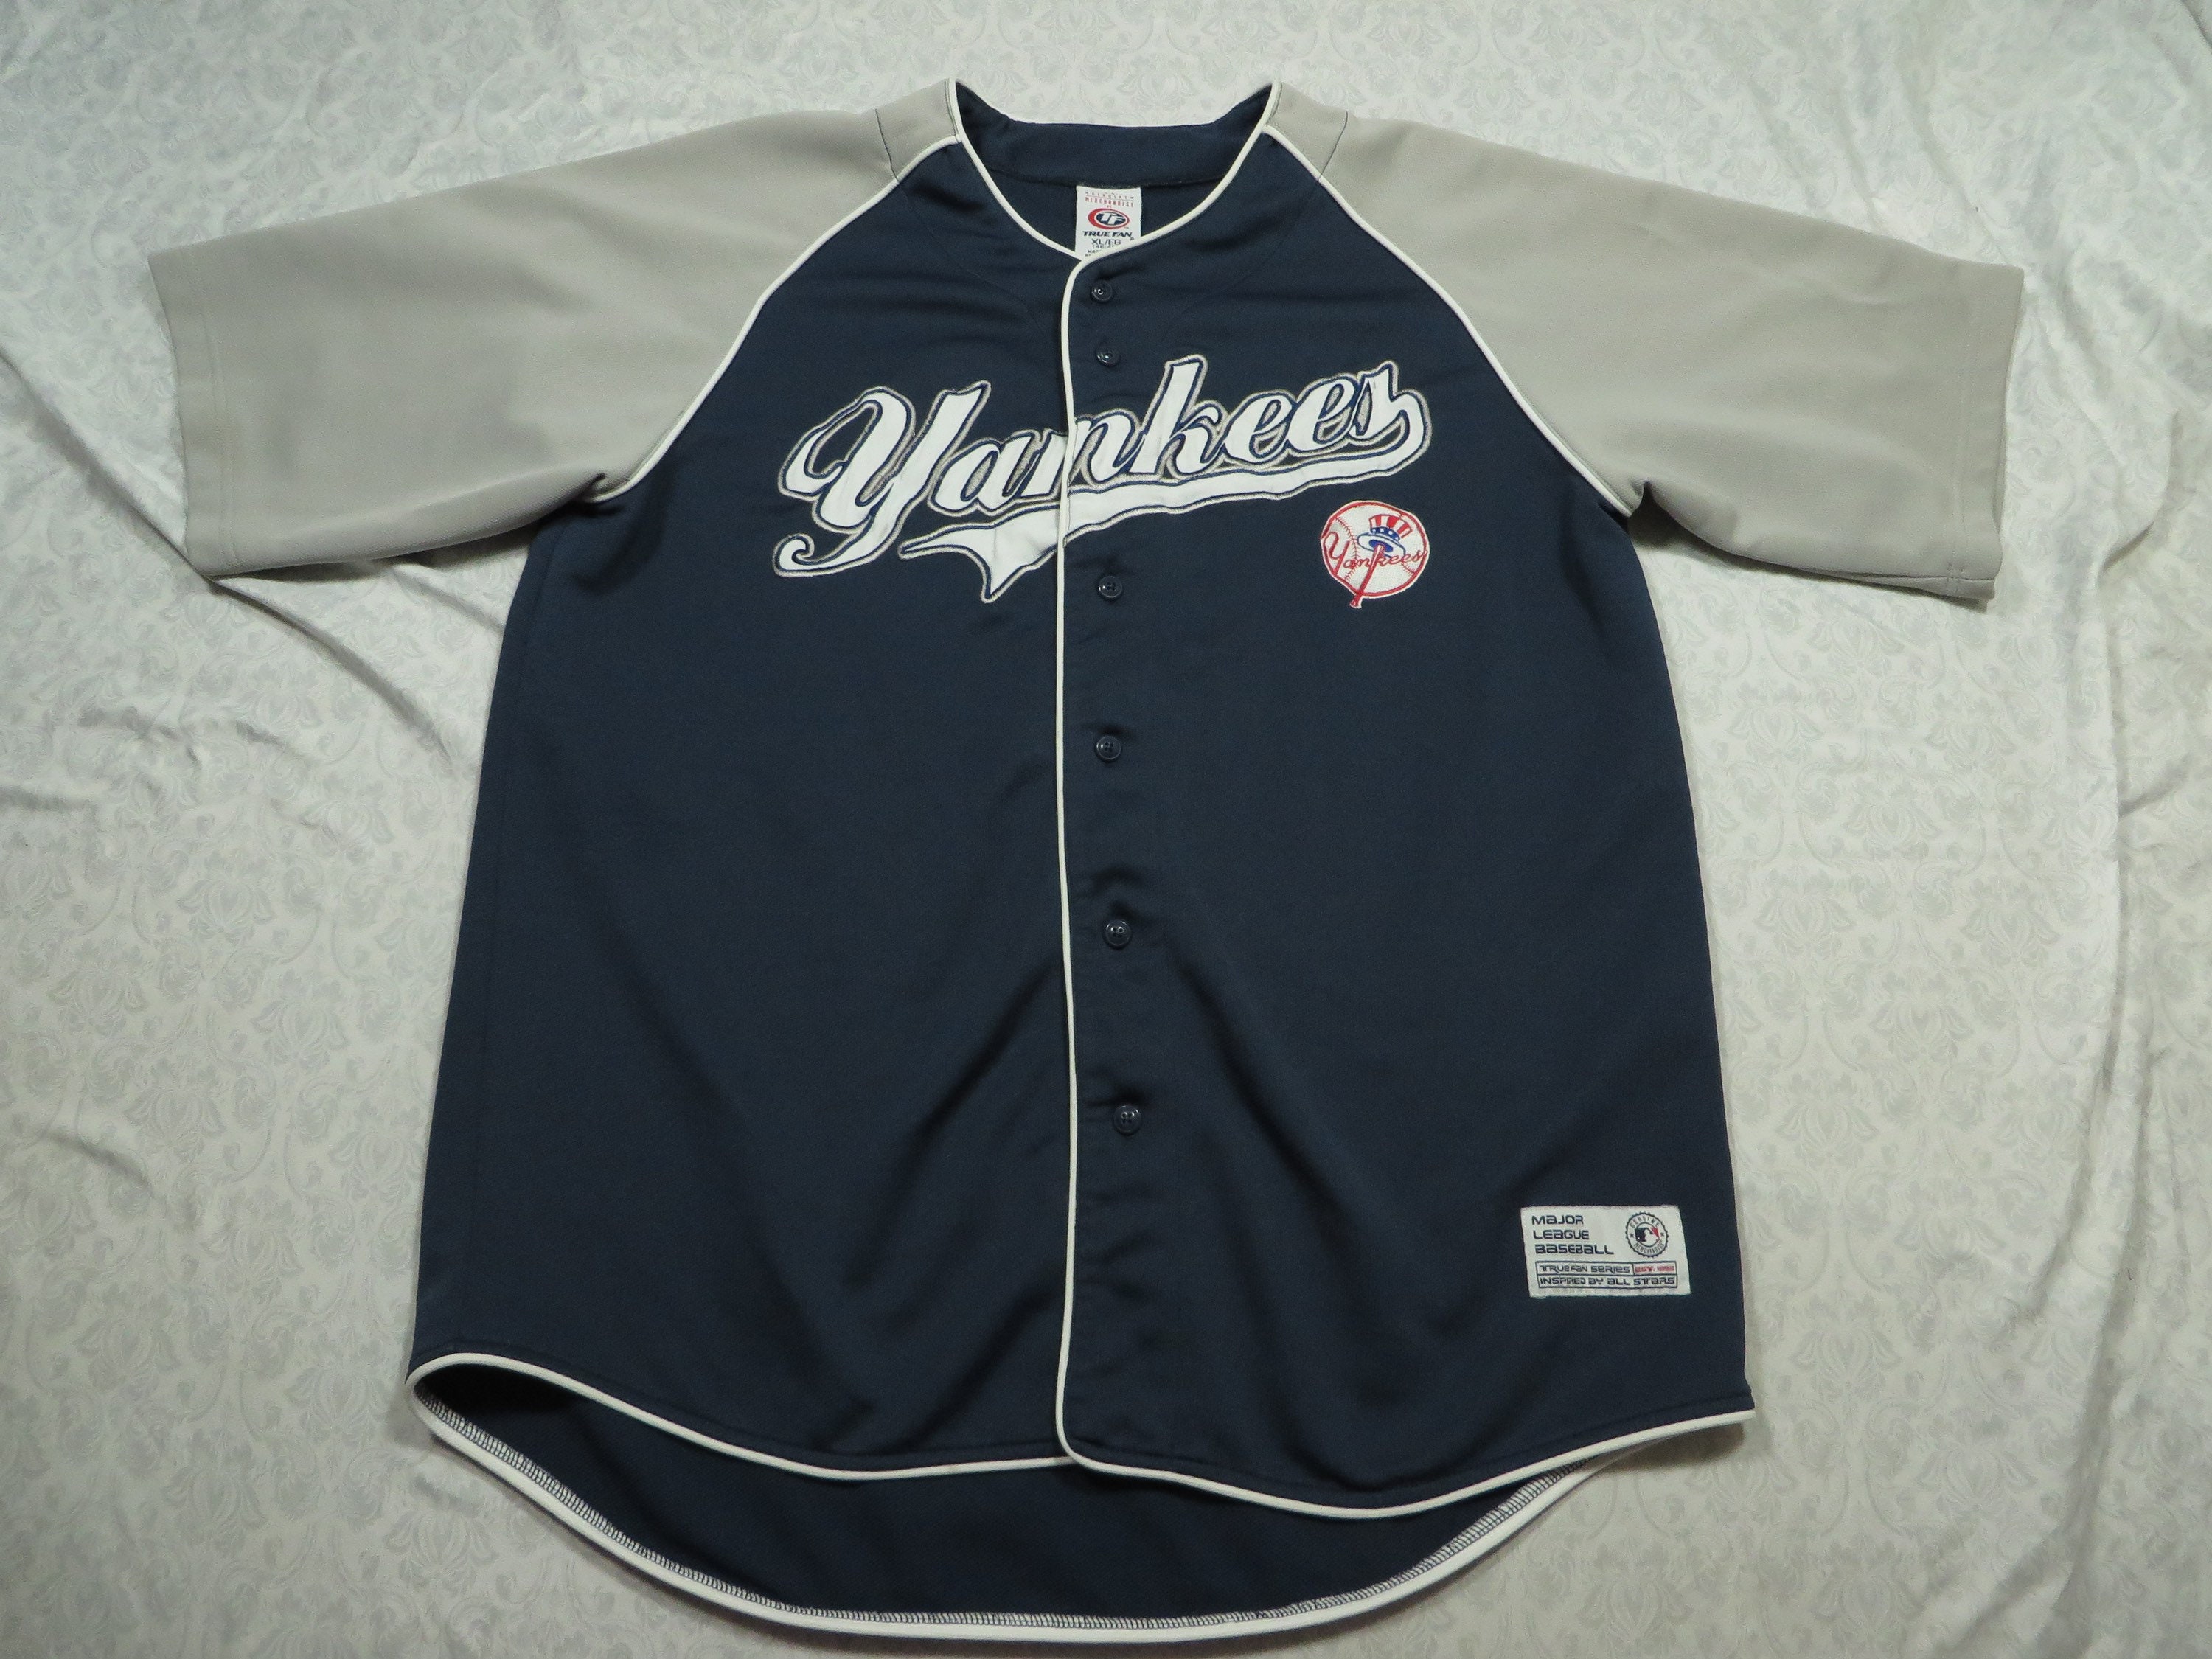 Vintage Yankees Jersey Blue Grey New York True Fan Baseball 